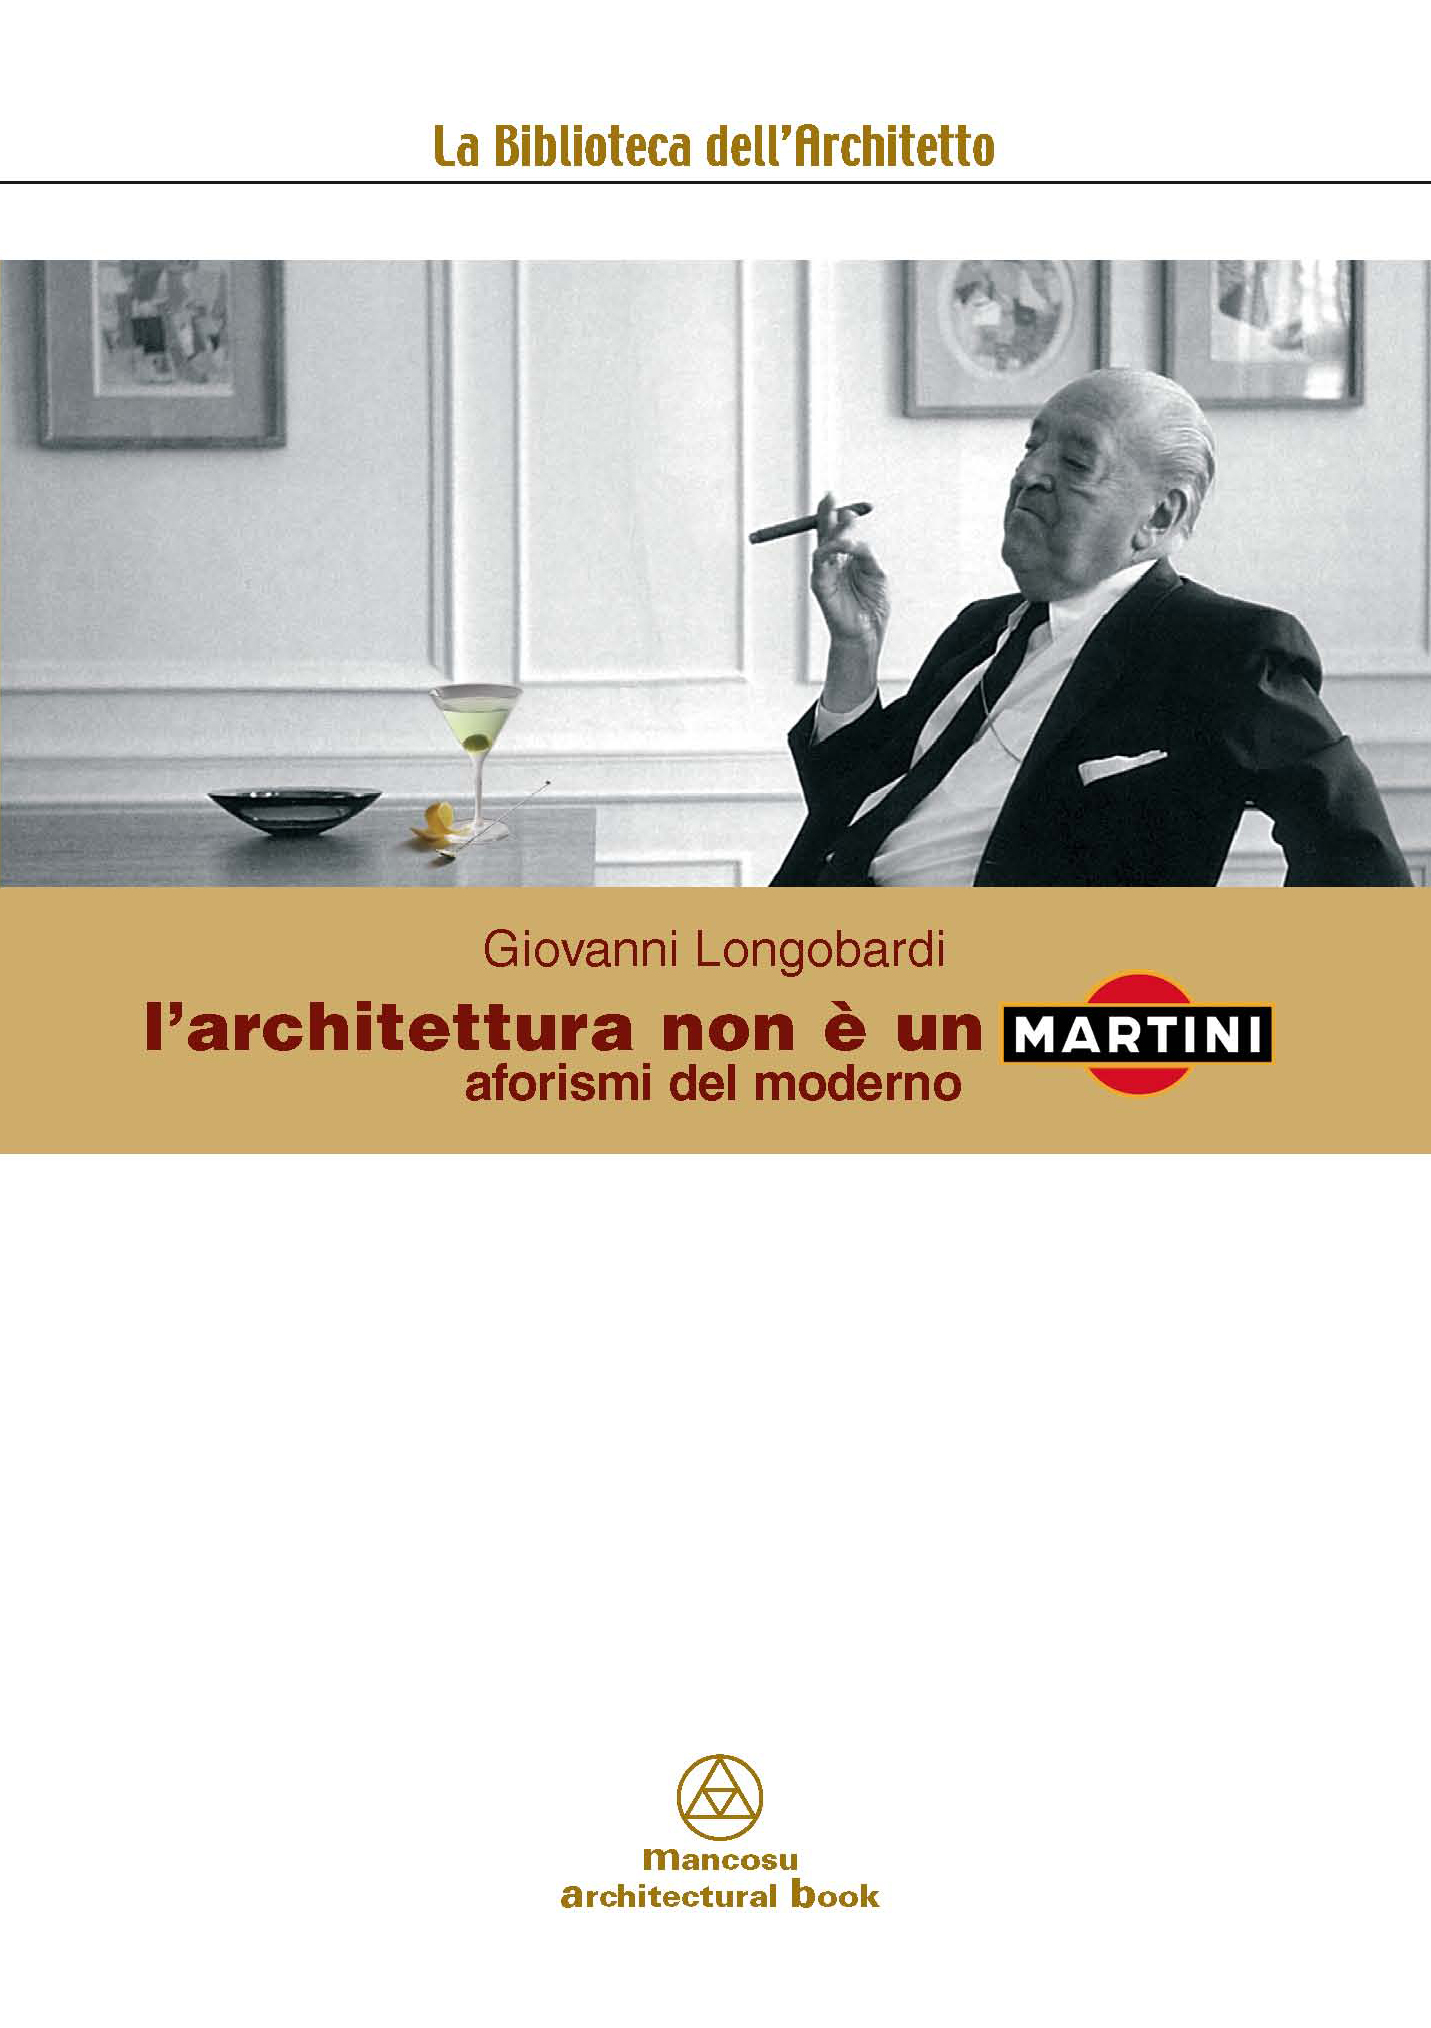 L'architettura non è un Martini
L'architettura non è un Martini